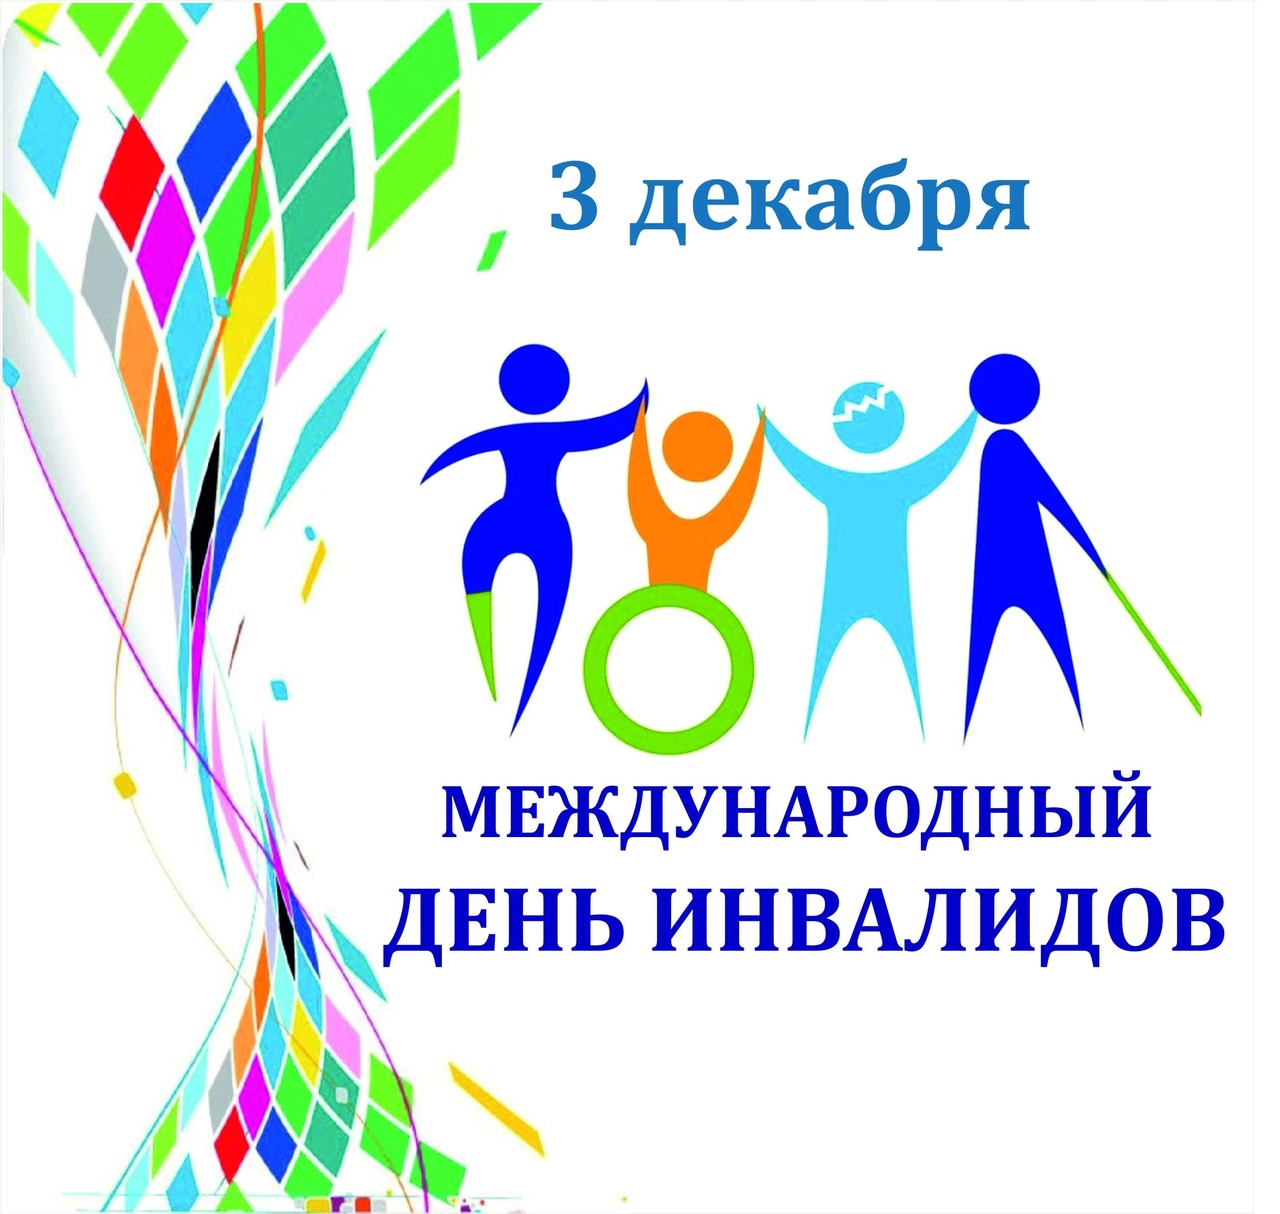  3️⃣ декабря - Международный день инвалидов.